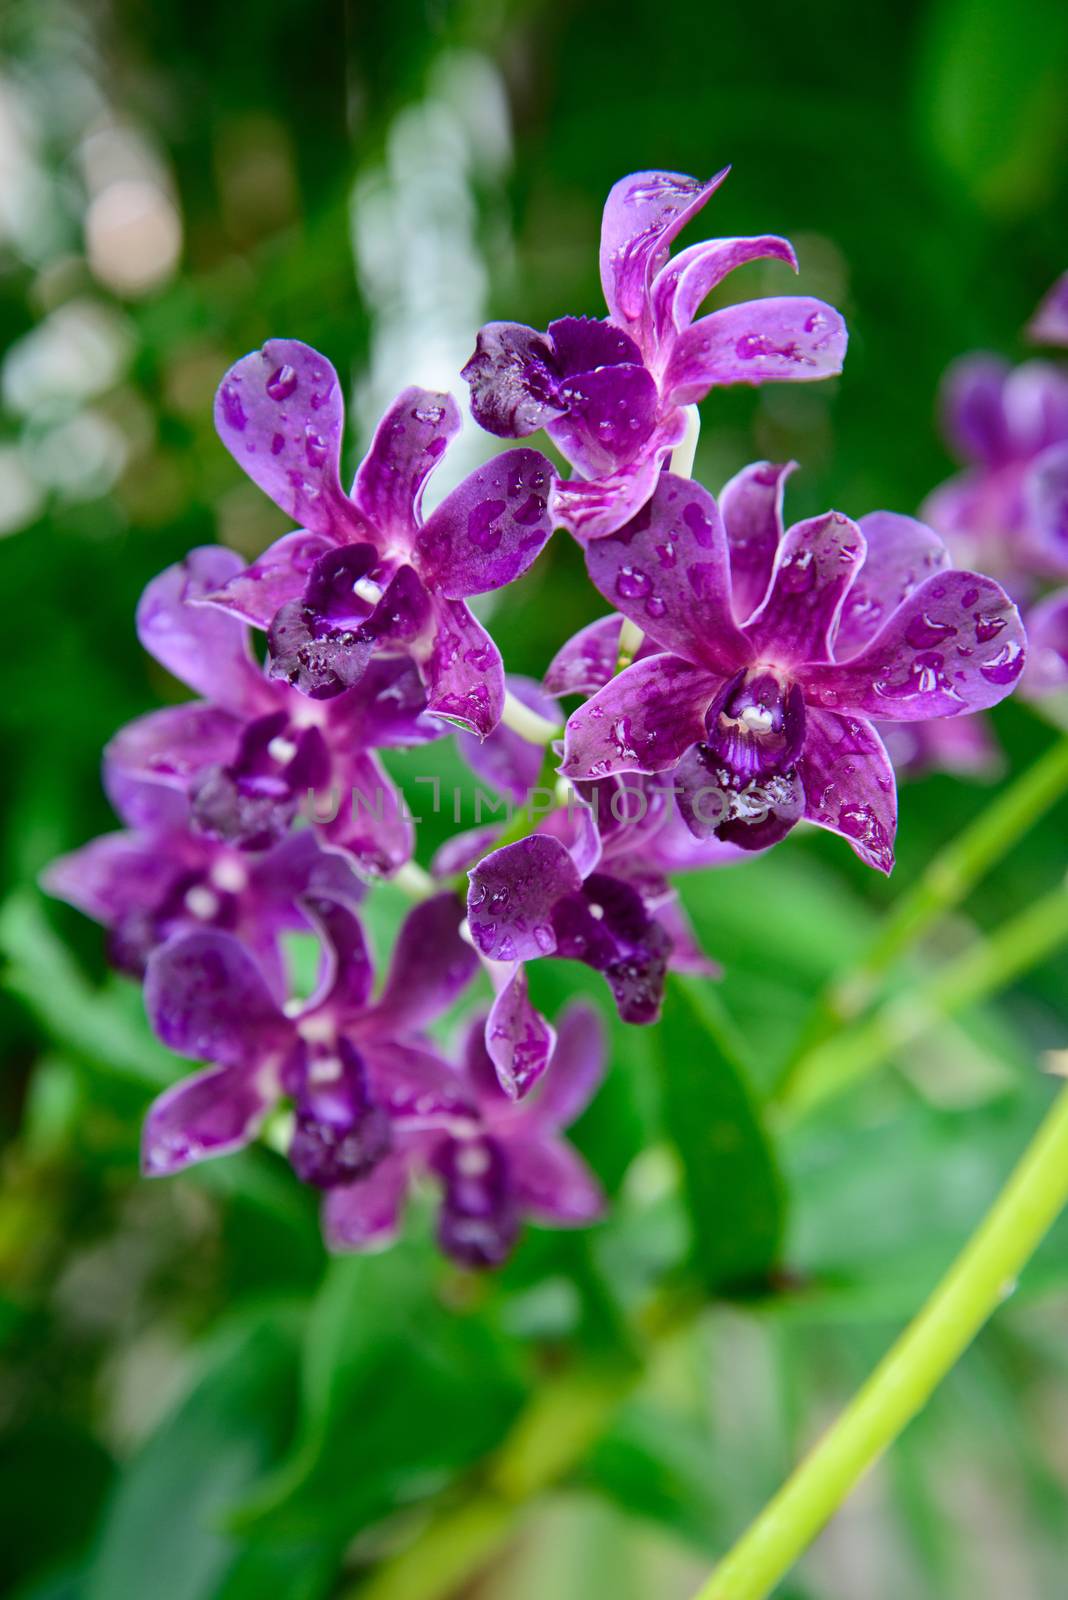 Rhynchostylis gigantea var purple orchids , Genus is Rhynchostylis